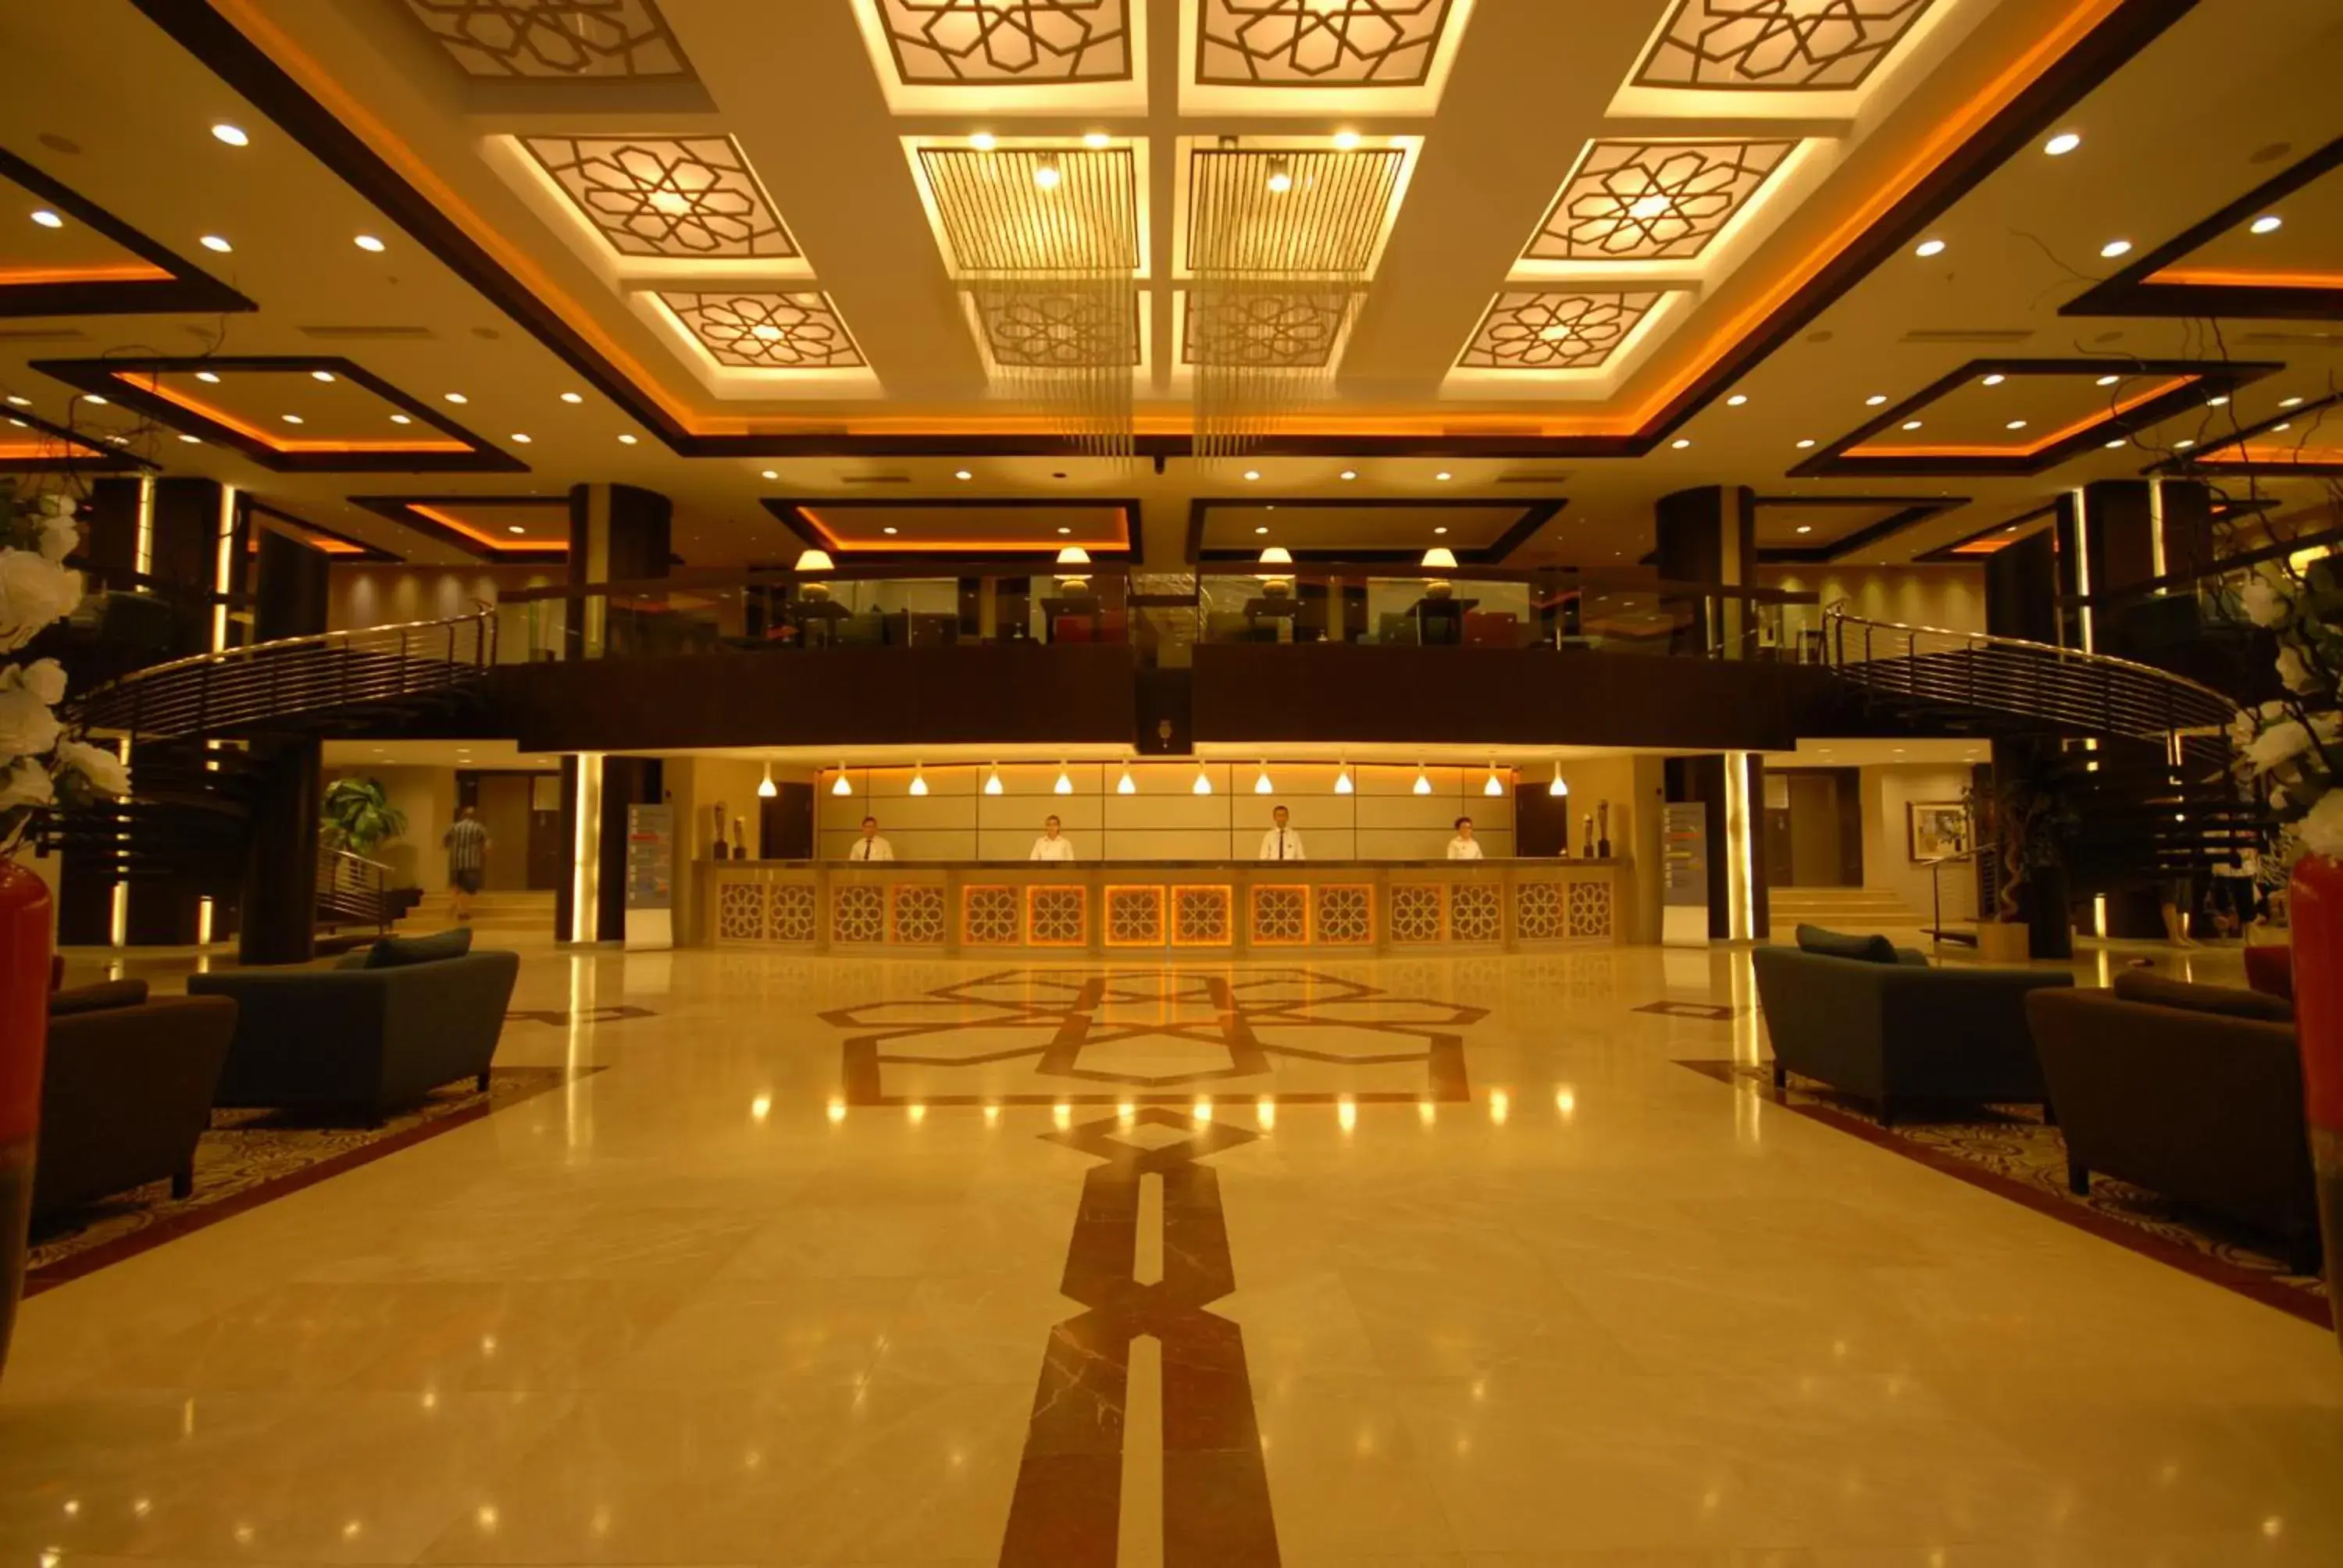 Lobby or reception in Suhan Cappadocia Hotel & Spa